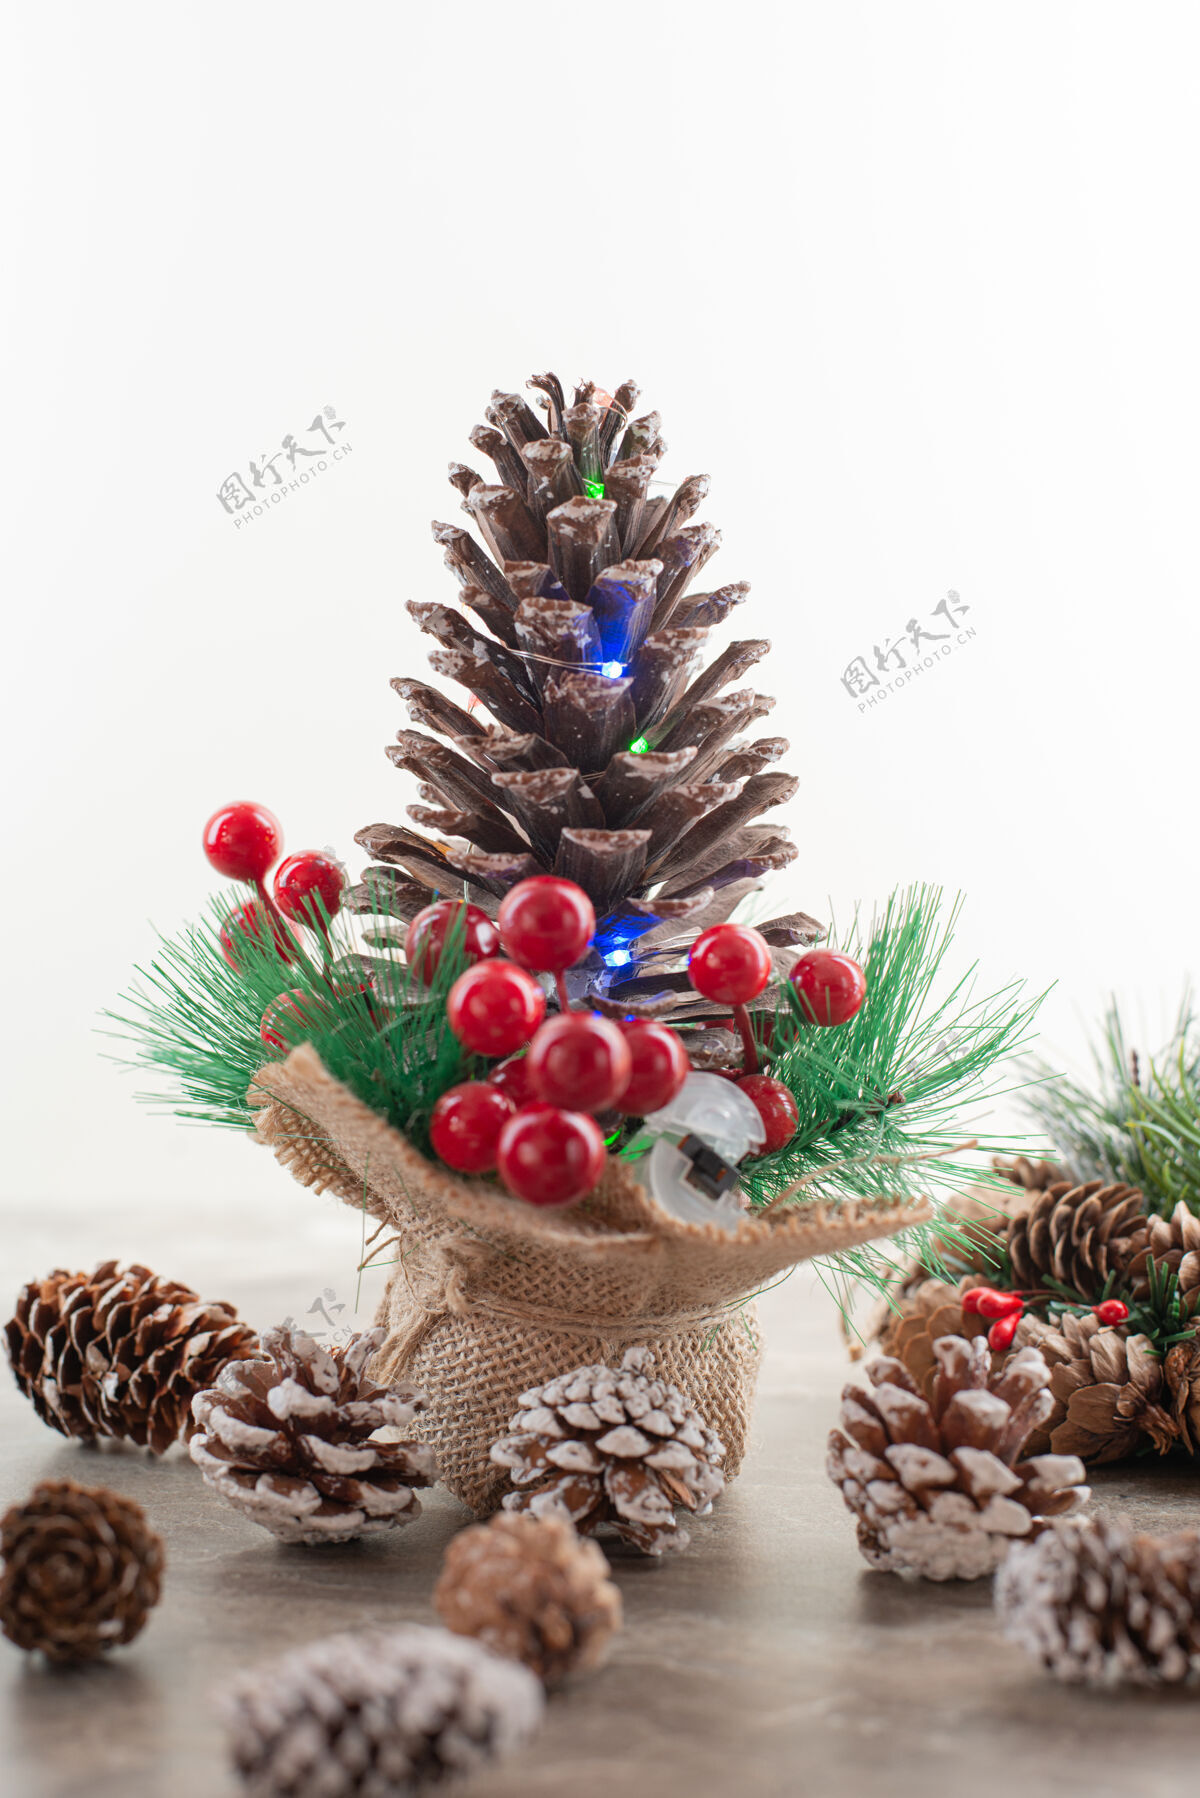 圆锥体木桌上装饰着冬青浆果和灯光的松果装饰十二月圣诞节